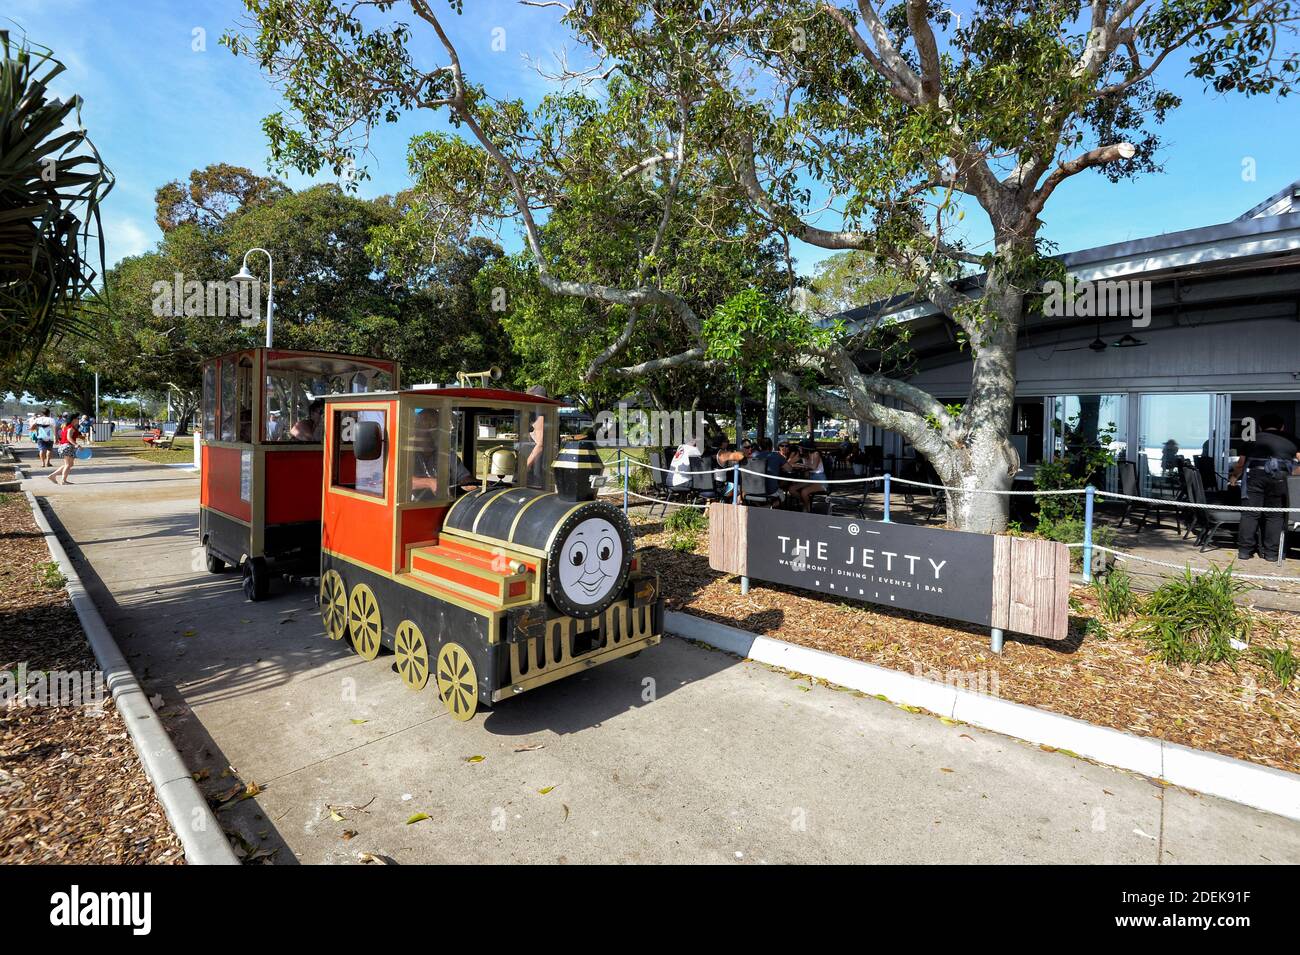 Le train pour enfants Thomas The Tank Engine se trouve en face du restaurant Jetty sur le défilé en bord de mer, Bongaree, Bribie Island, Sunshine Coast, Queensl Banque D'Images